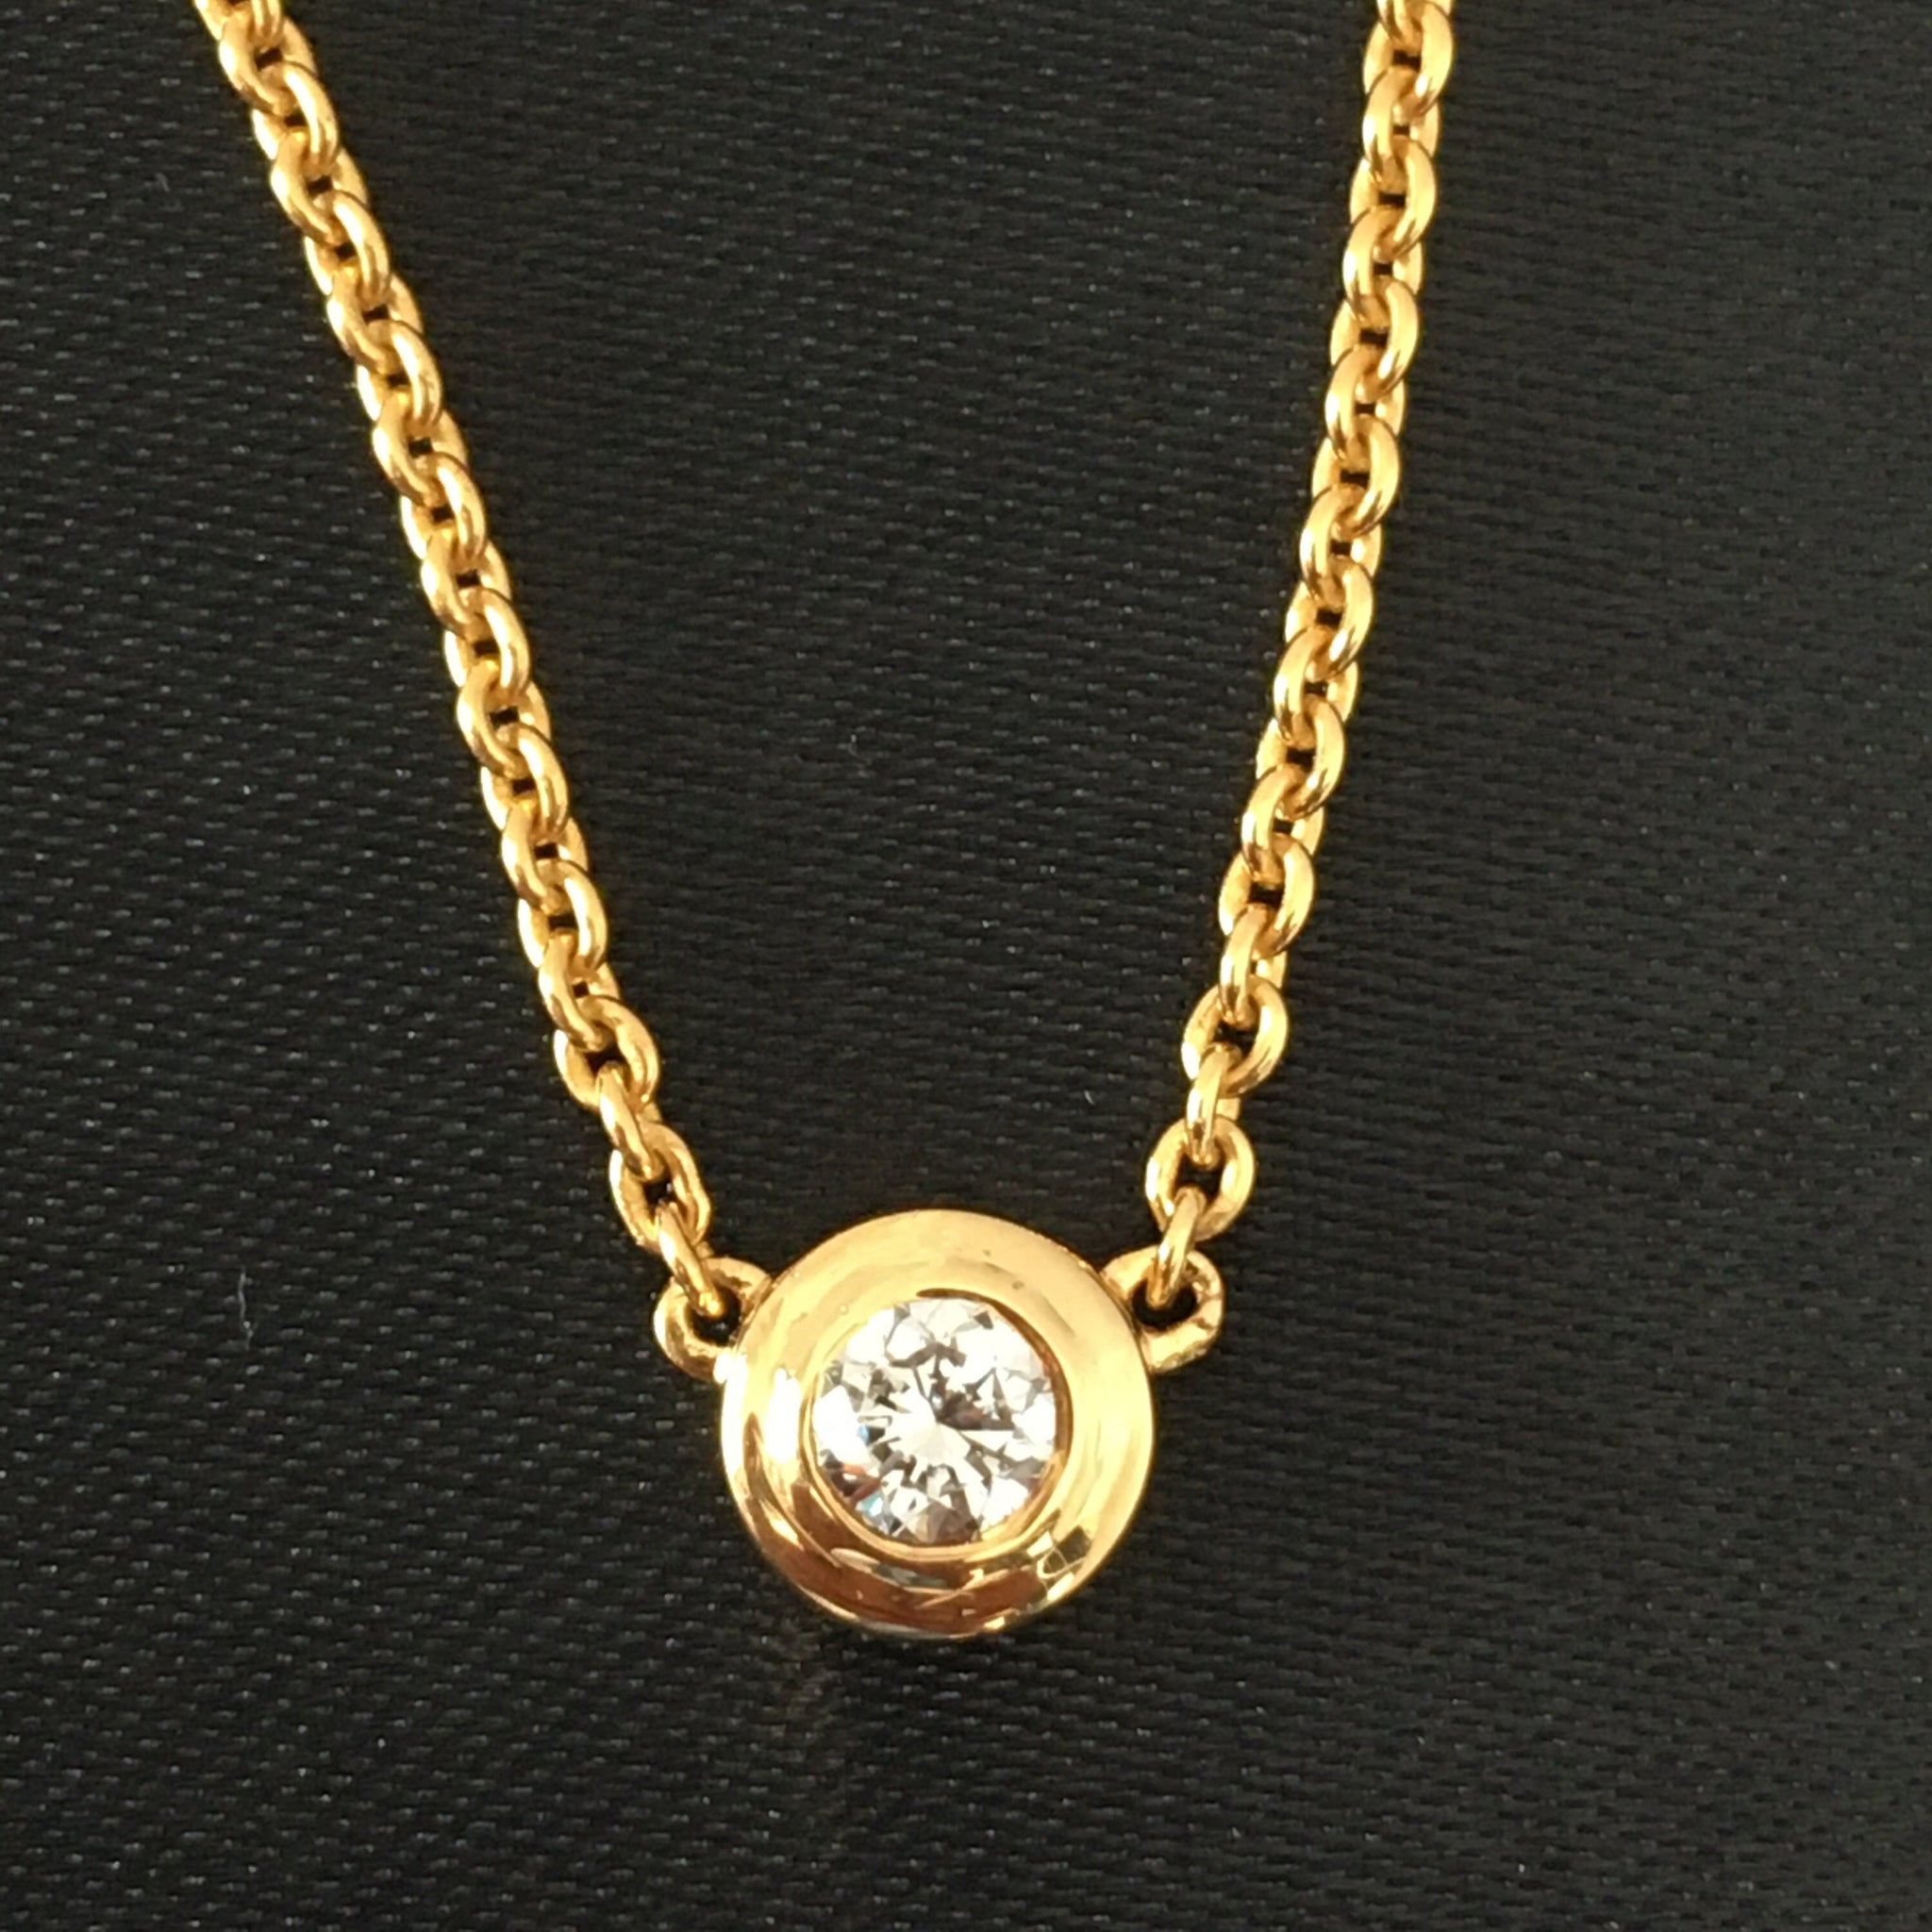 14k Gold Diamond Solitaire Necklace / Lunette Réglage Solitaire Minimalist Necklace / Delicate Diamond Necklace /Diamond Choker / Gift for Mom